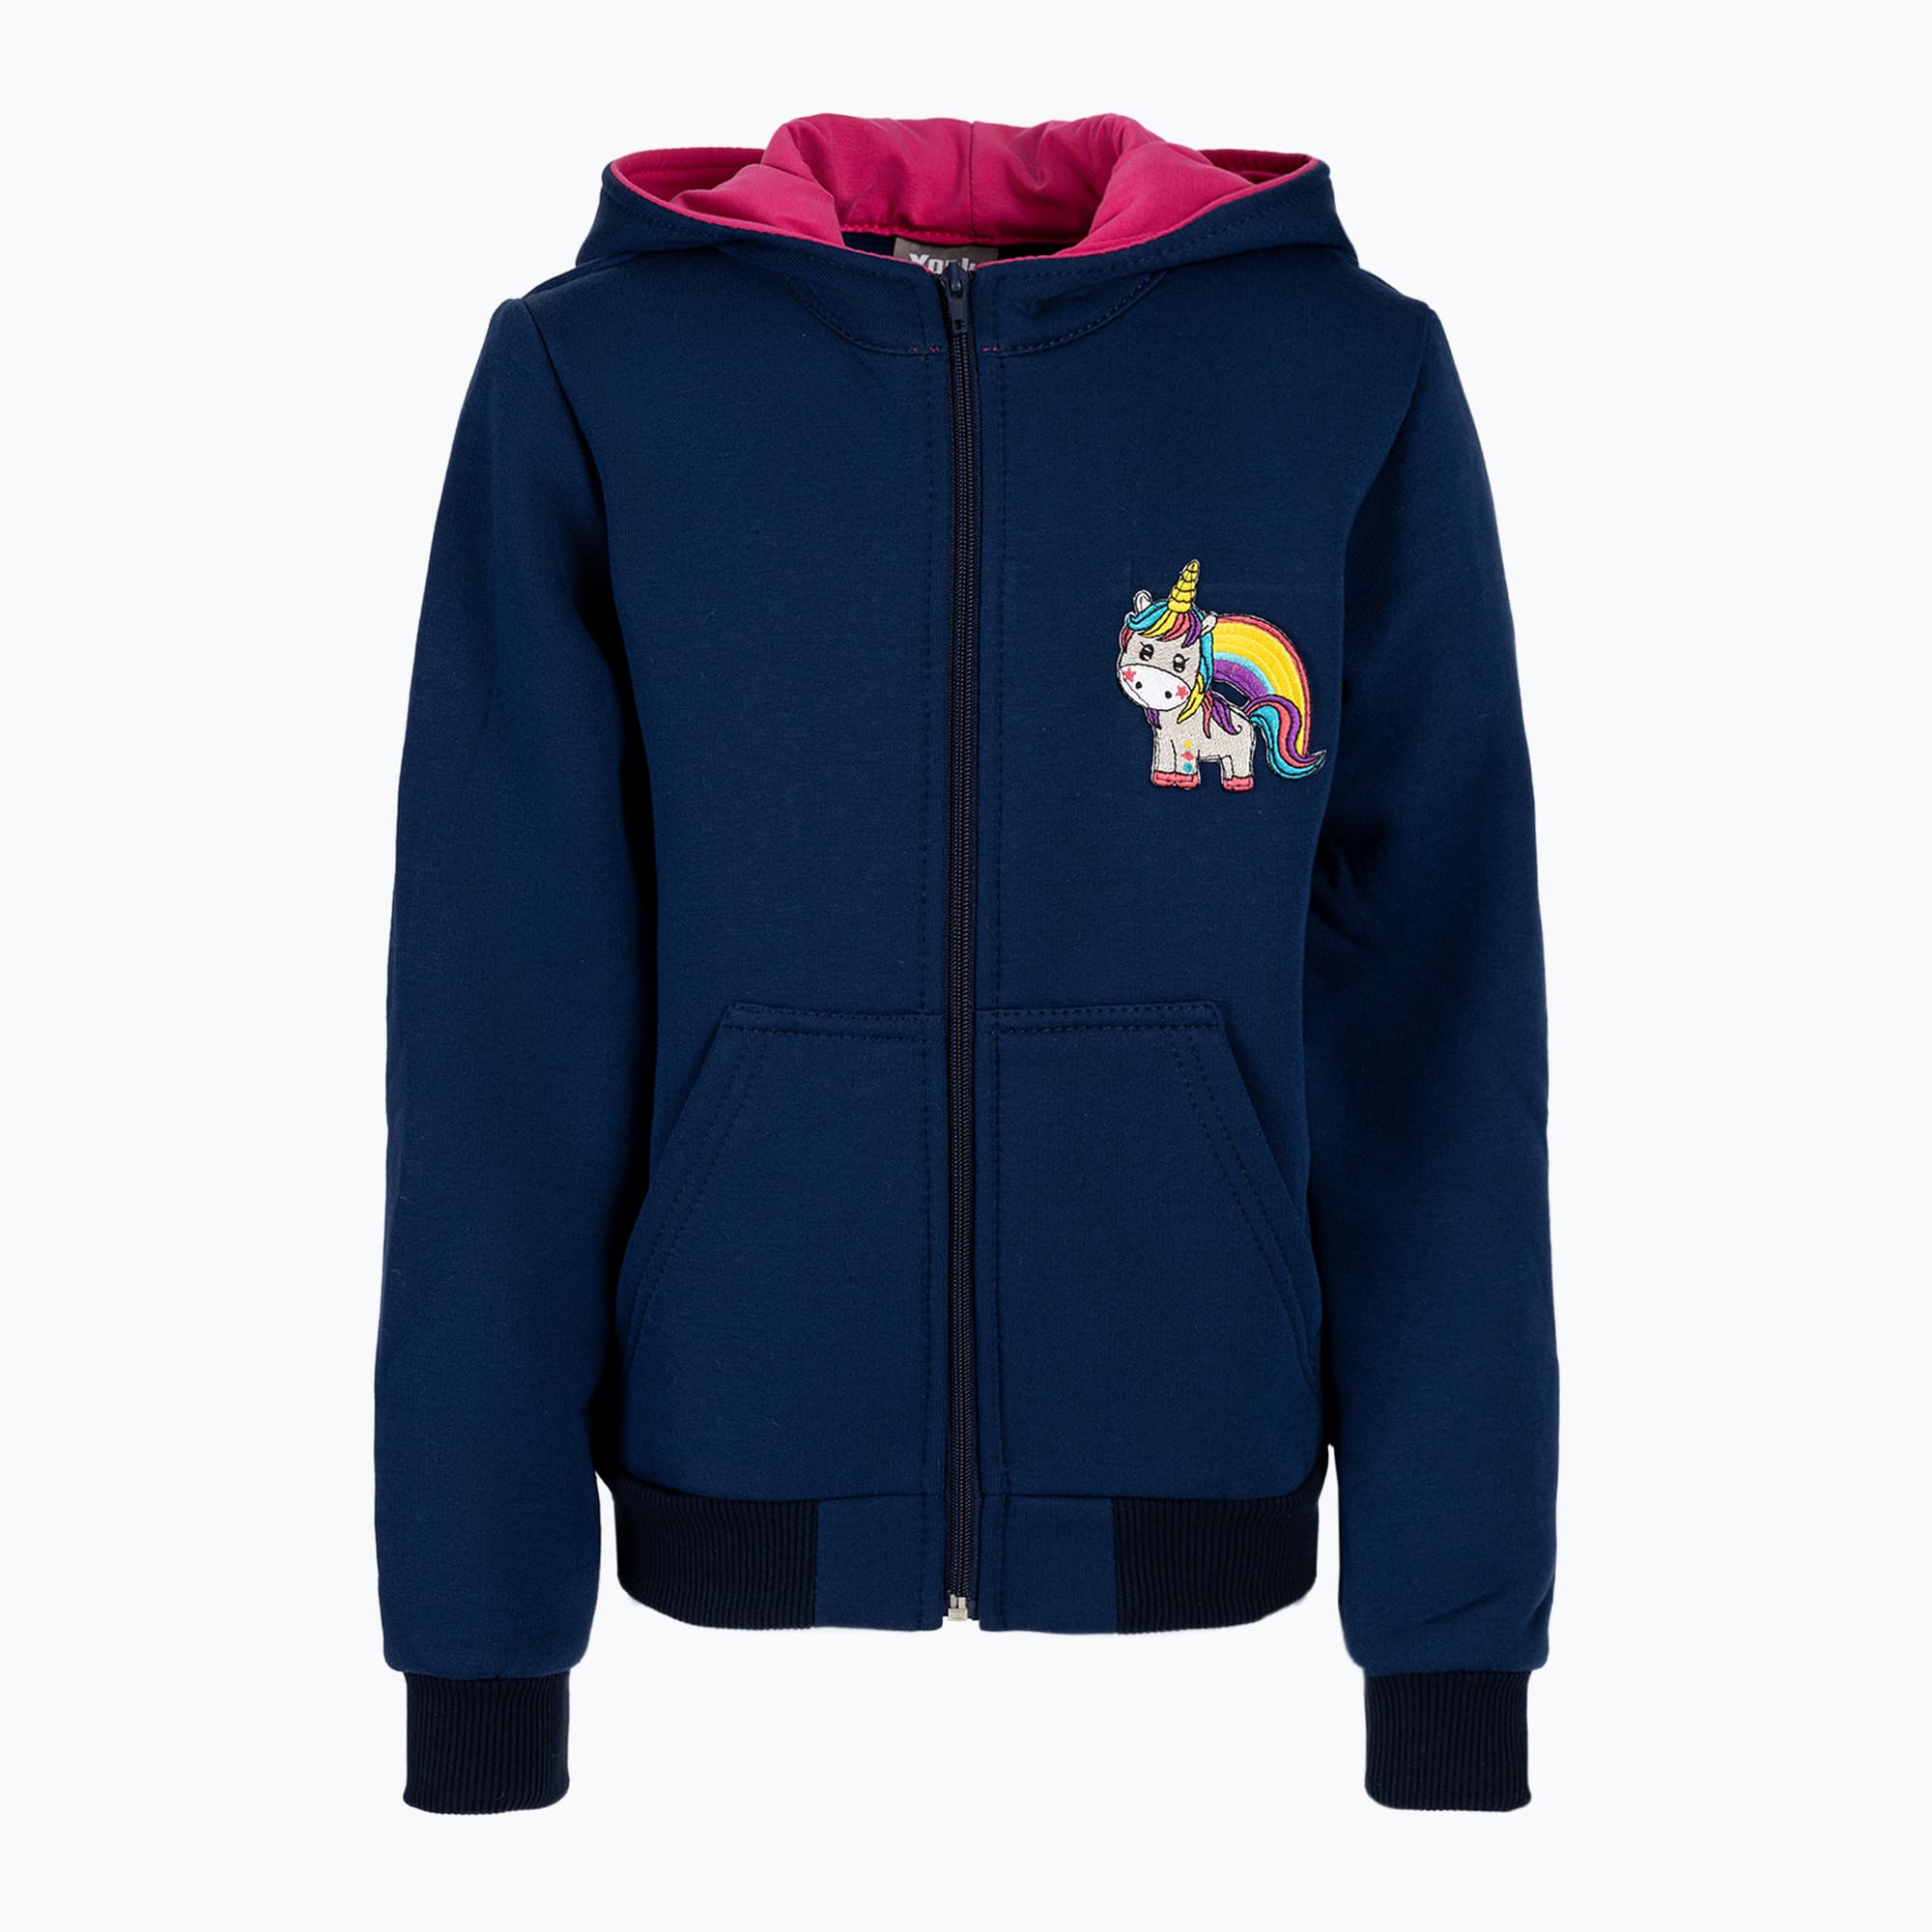 Jachetă de călărie pentru copii York Unicorn roz și albastru marin 501801146